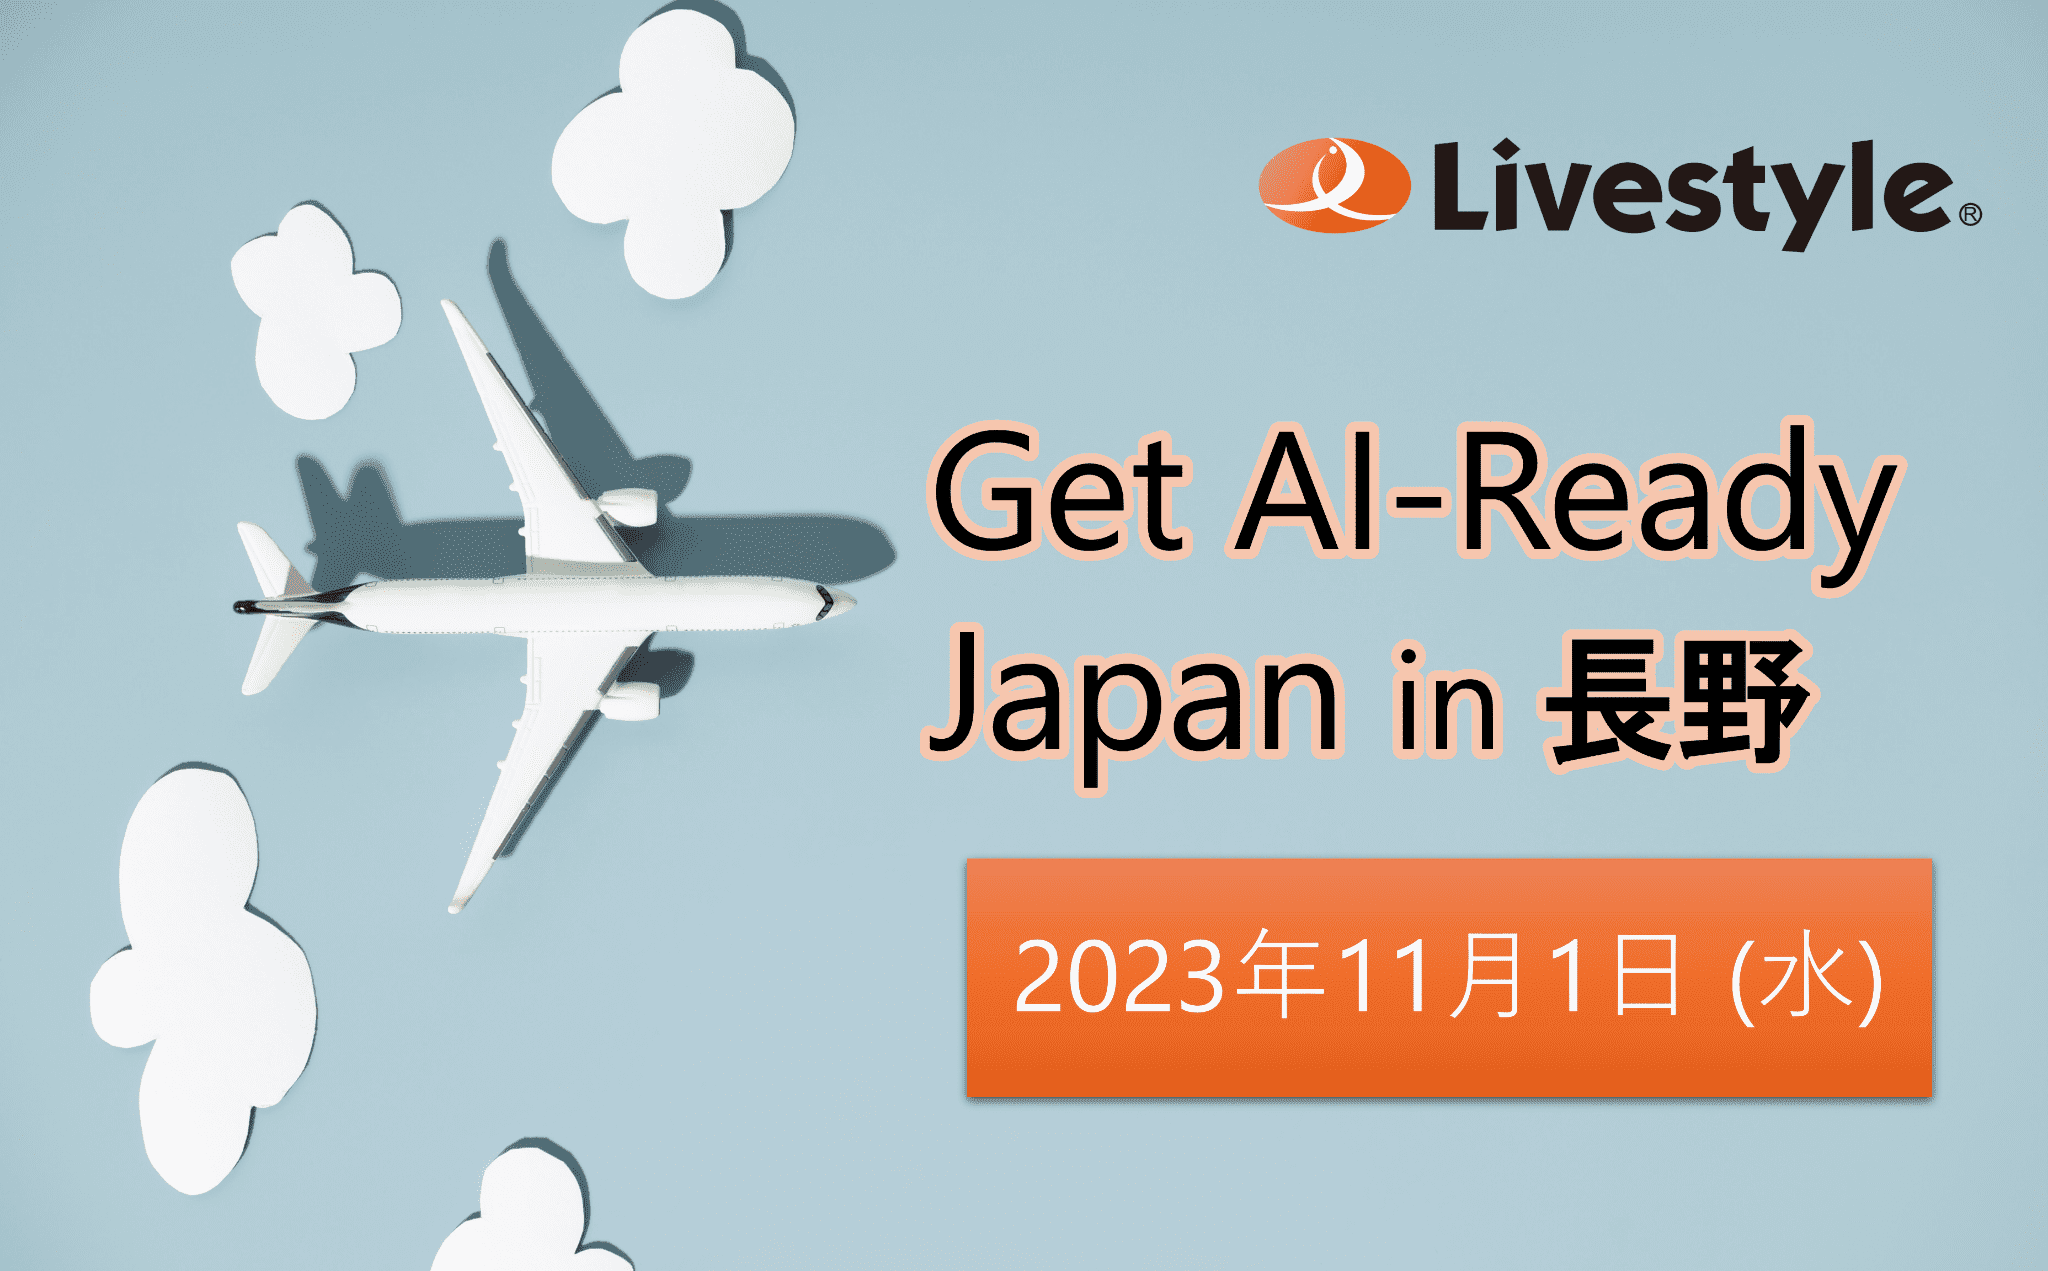 【イベント情報】Get AI-Ready Japan を Microsoft Base Nagano で開催します！